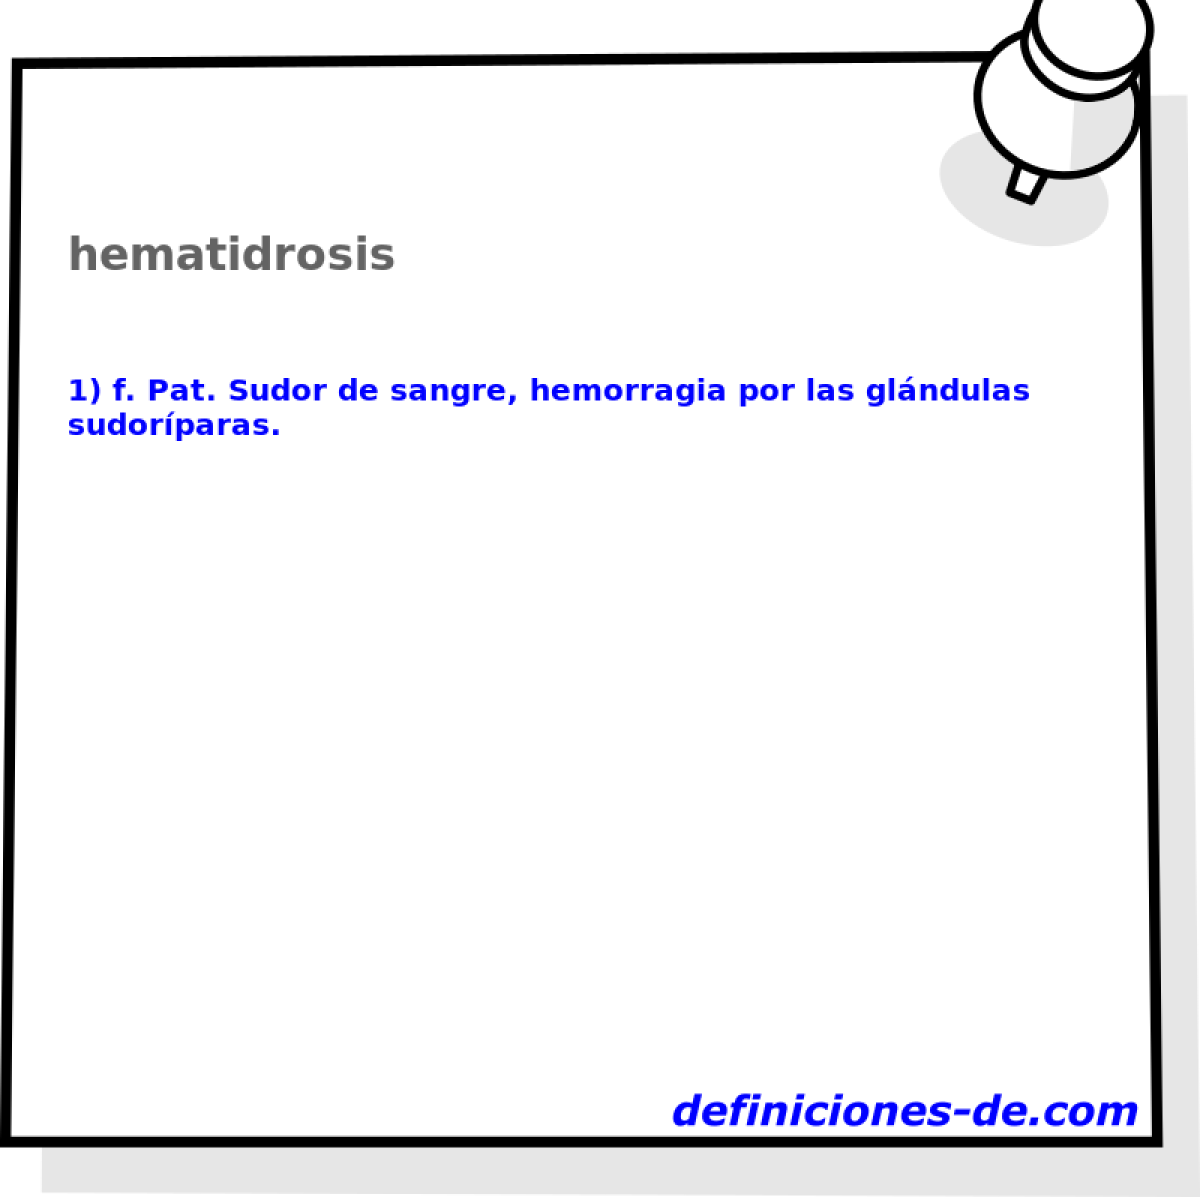 hematidrosis 